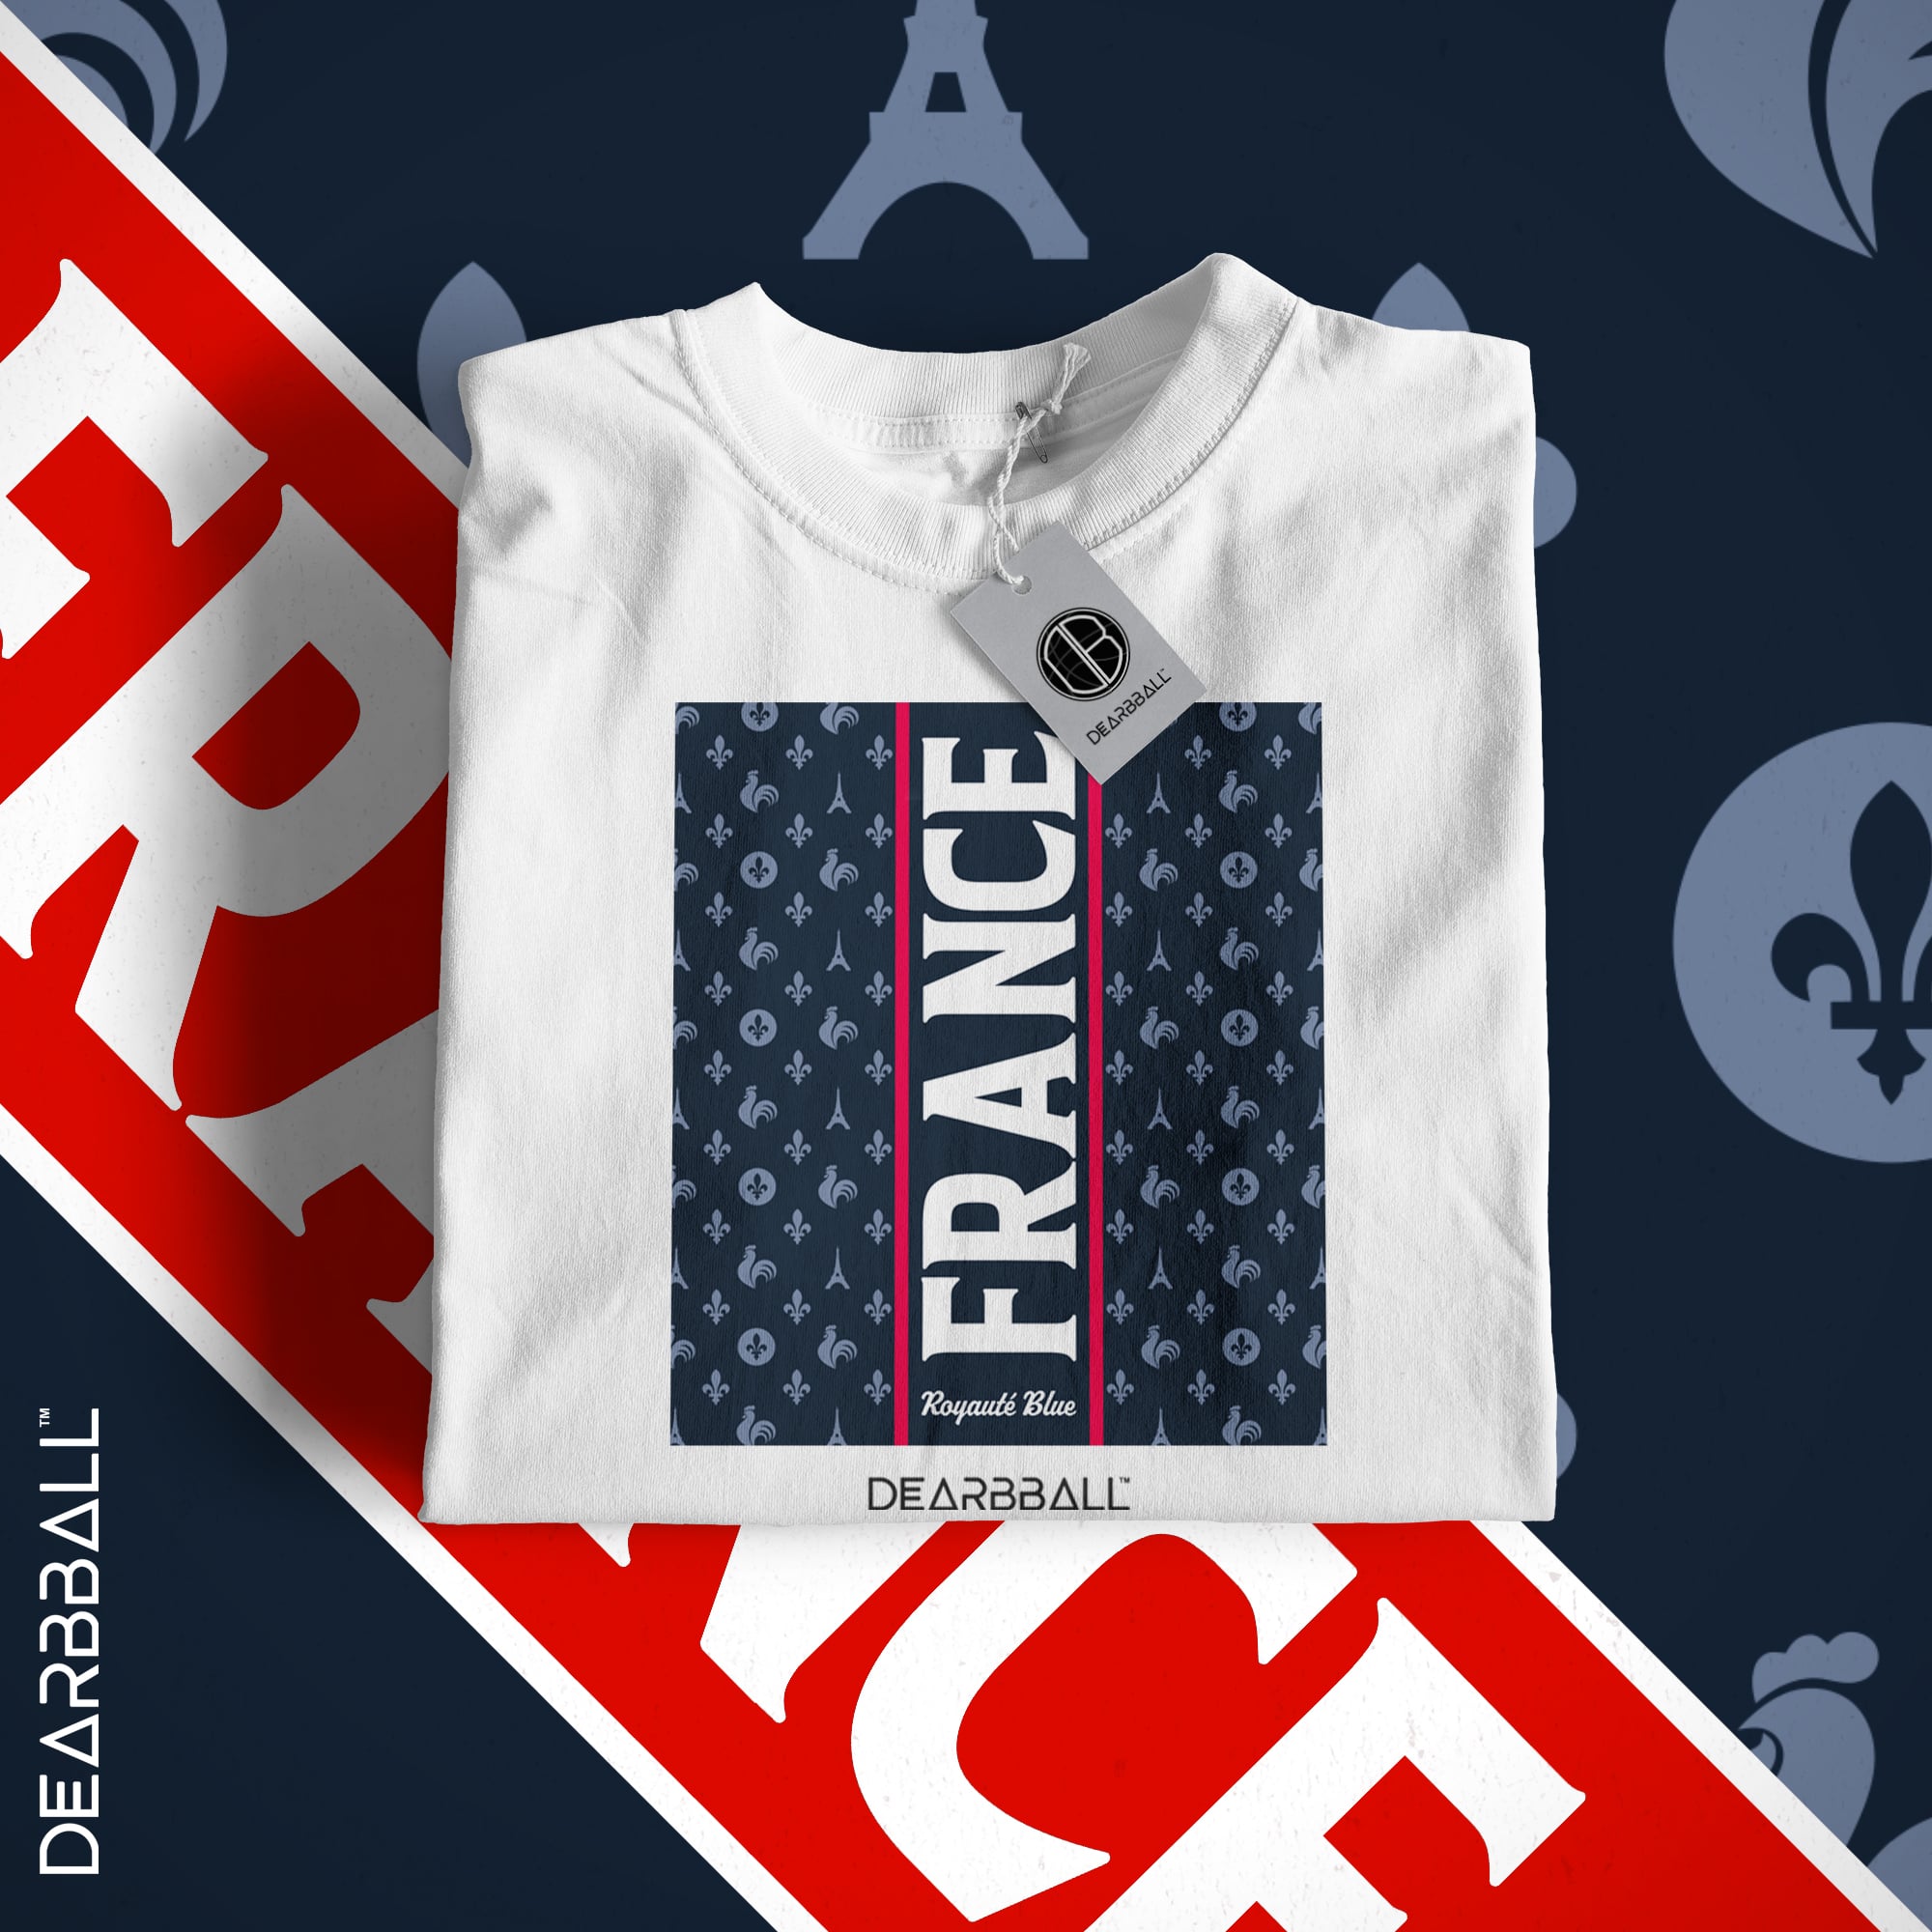 Camiseta DearBBall - Edición azul Francia Royauté